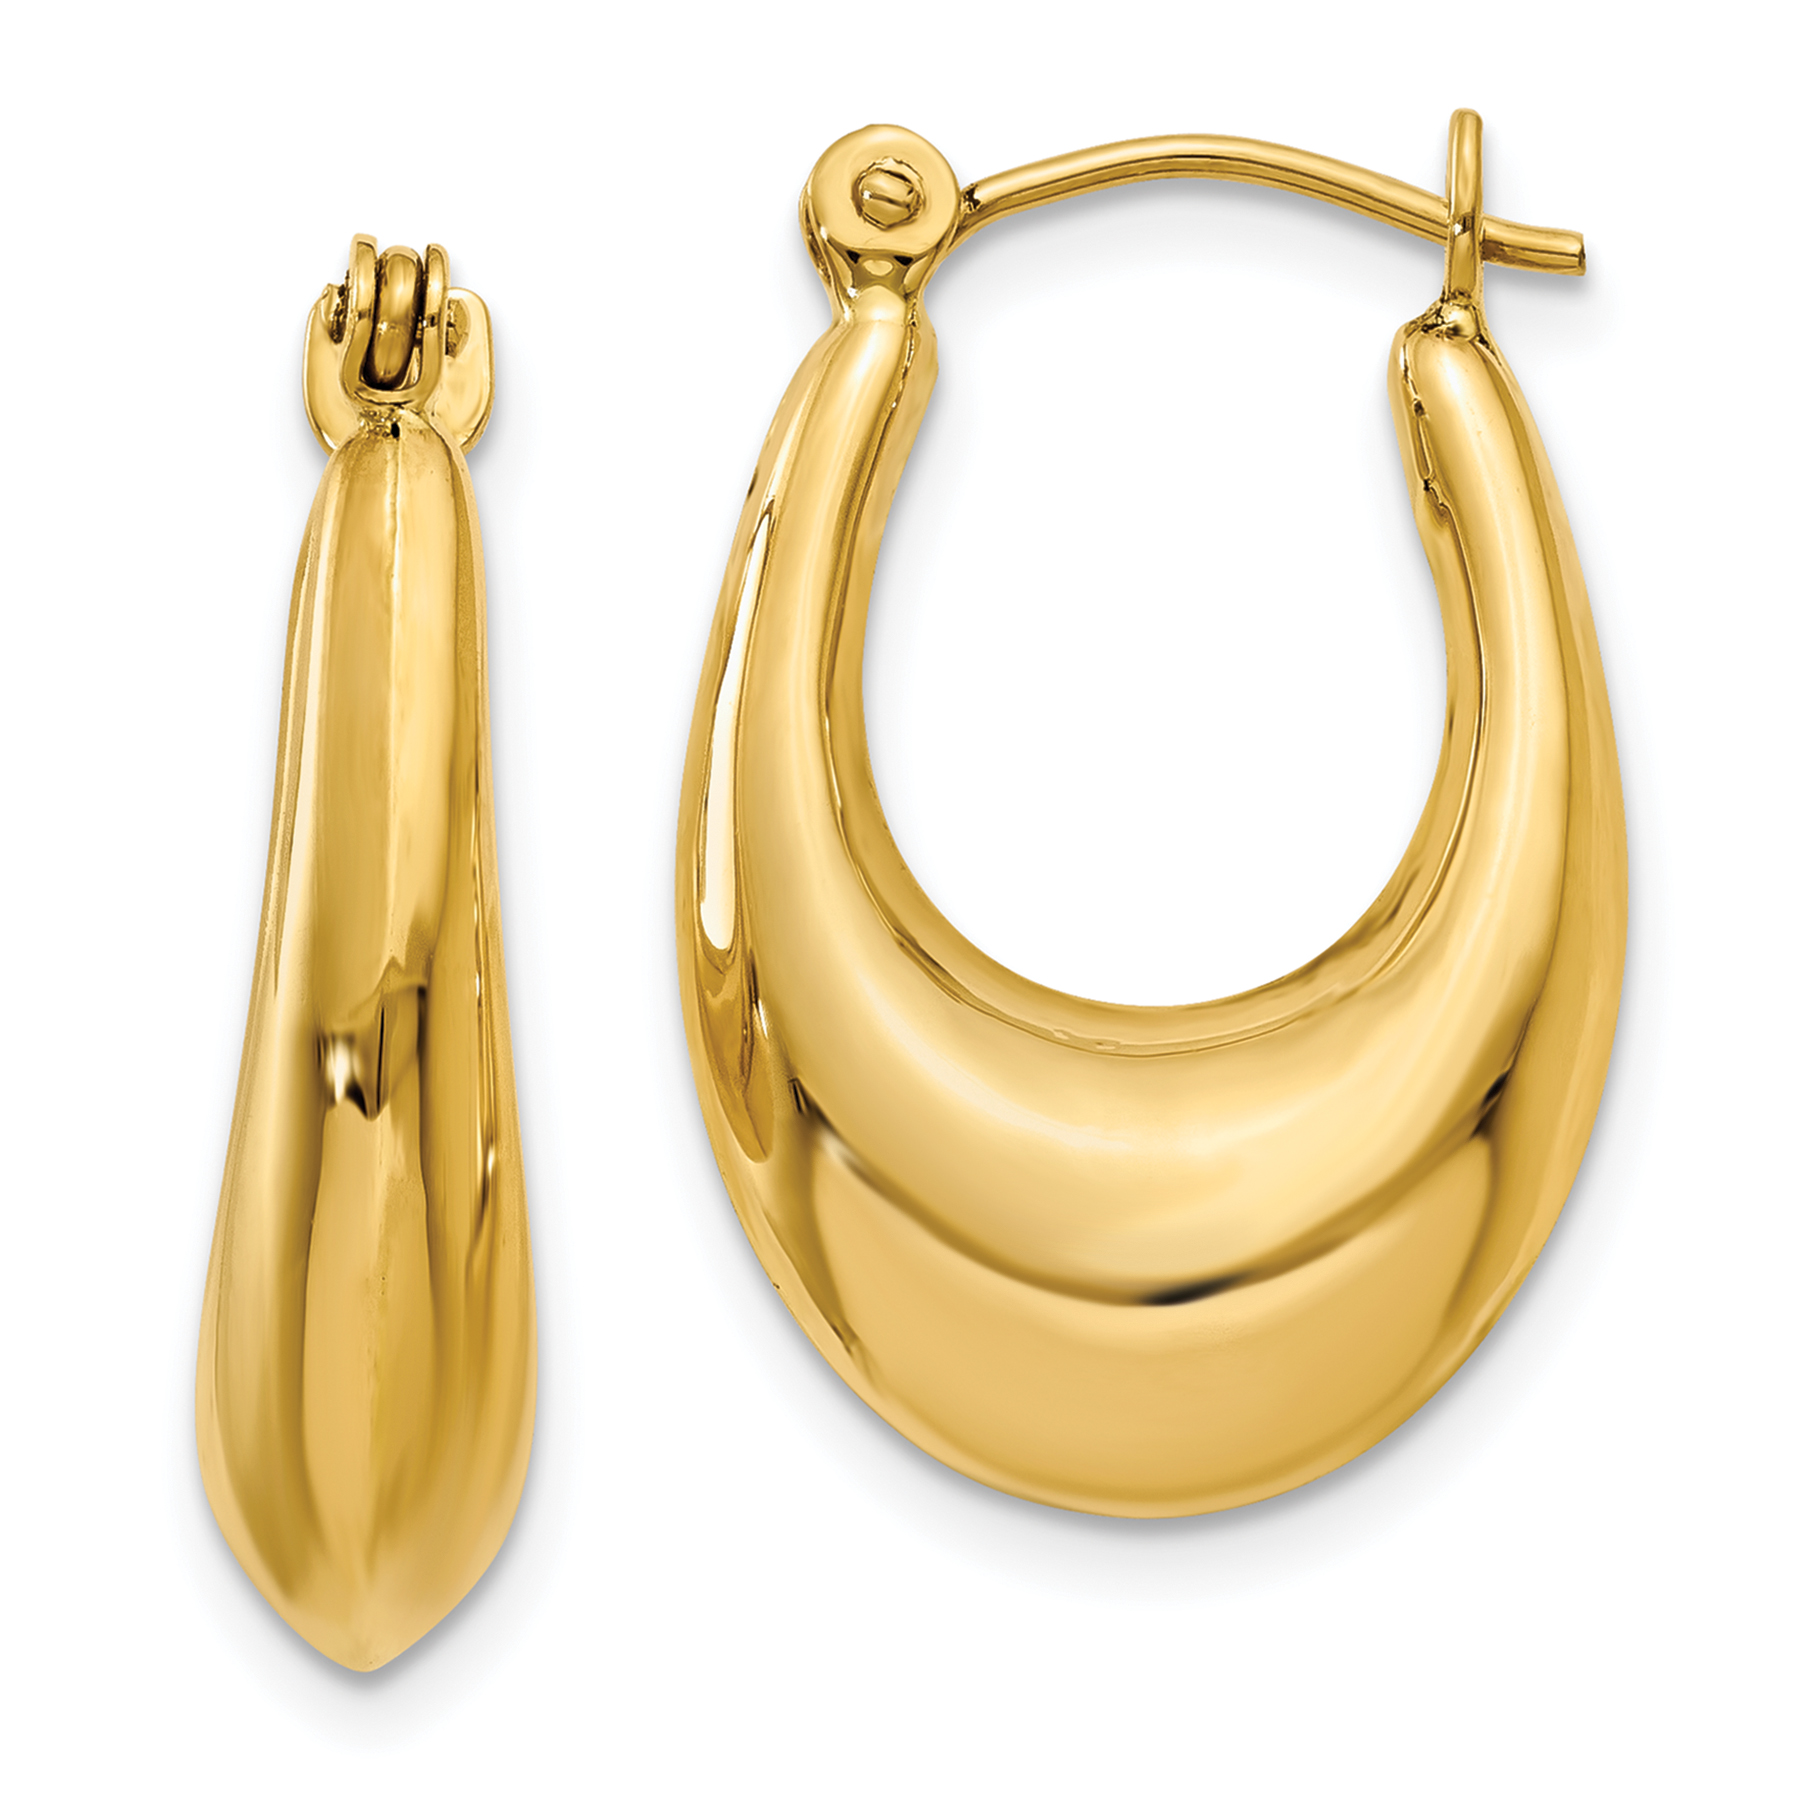 15mm X 15mm 14k Two-Tone Gold Fancy Hollow Hoop Earrings,